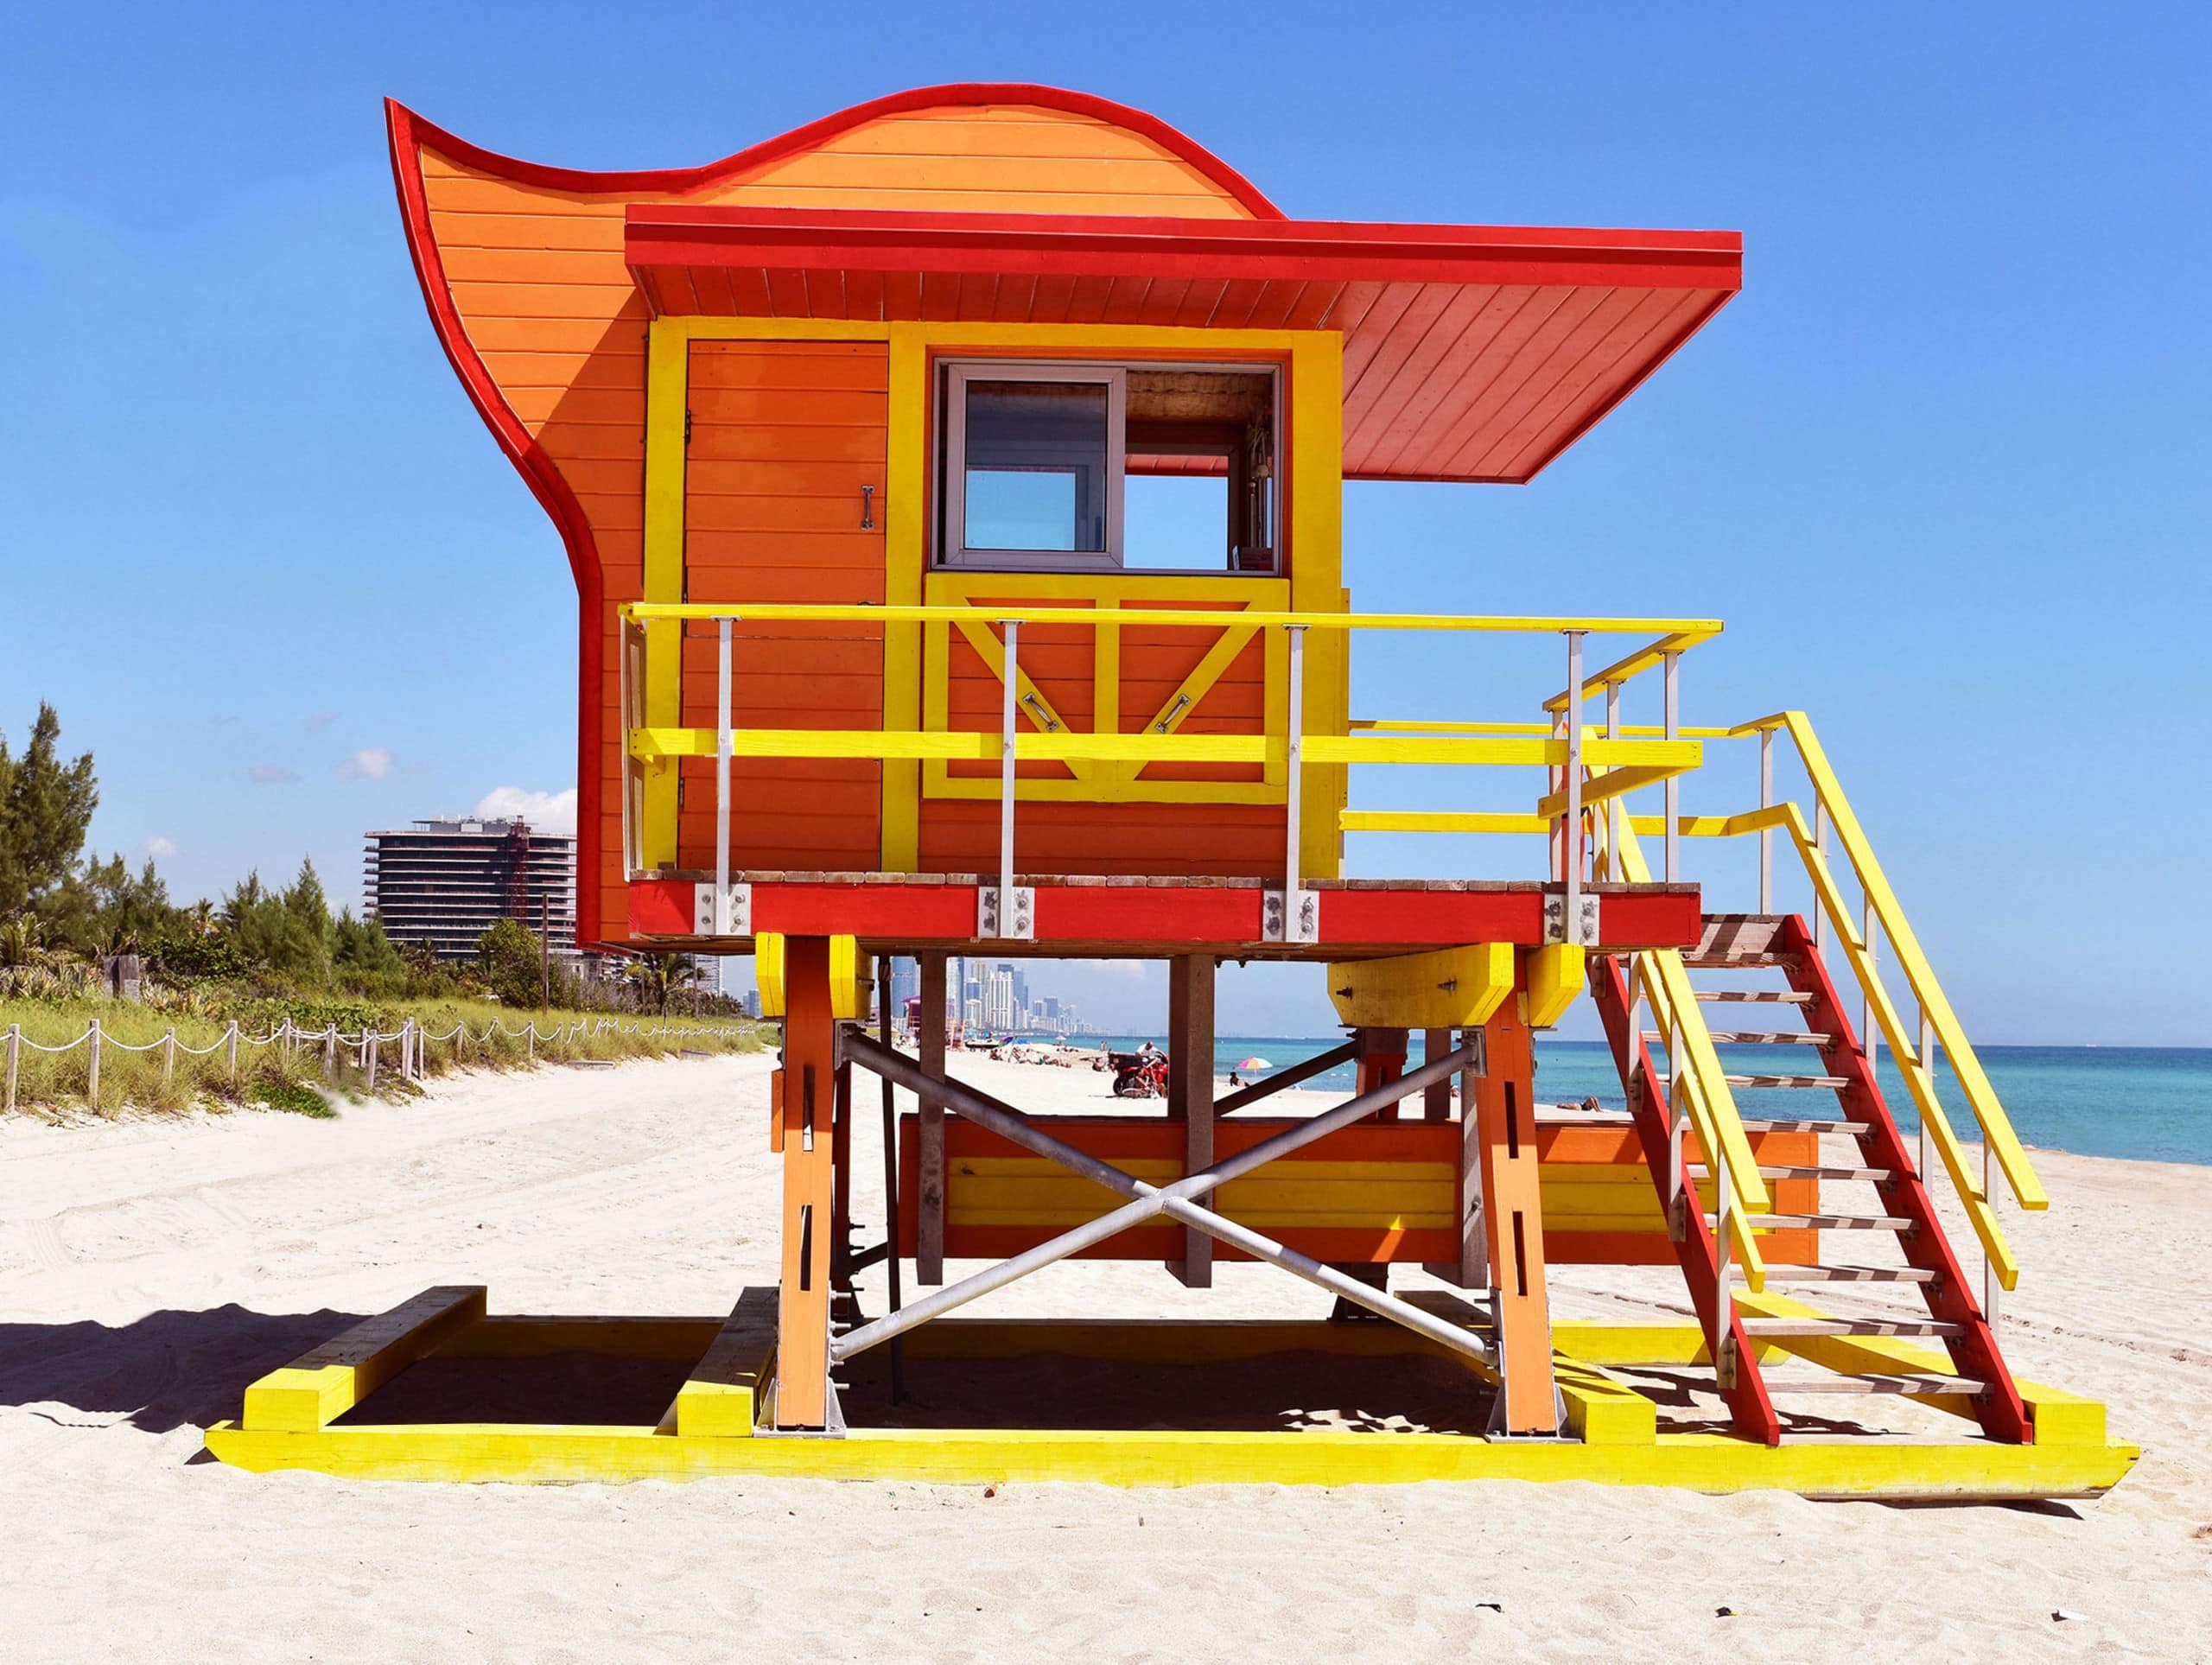 Ein orange-gelb-rotes Wasserwachthäuschen am Strand mit geschwungener Dachform. Miami Beach, Lifeguard Tower, William Lane, Foto: Archiv Architekten